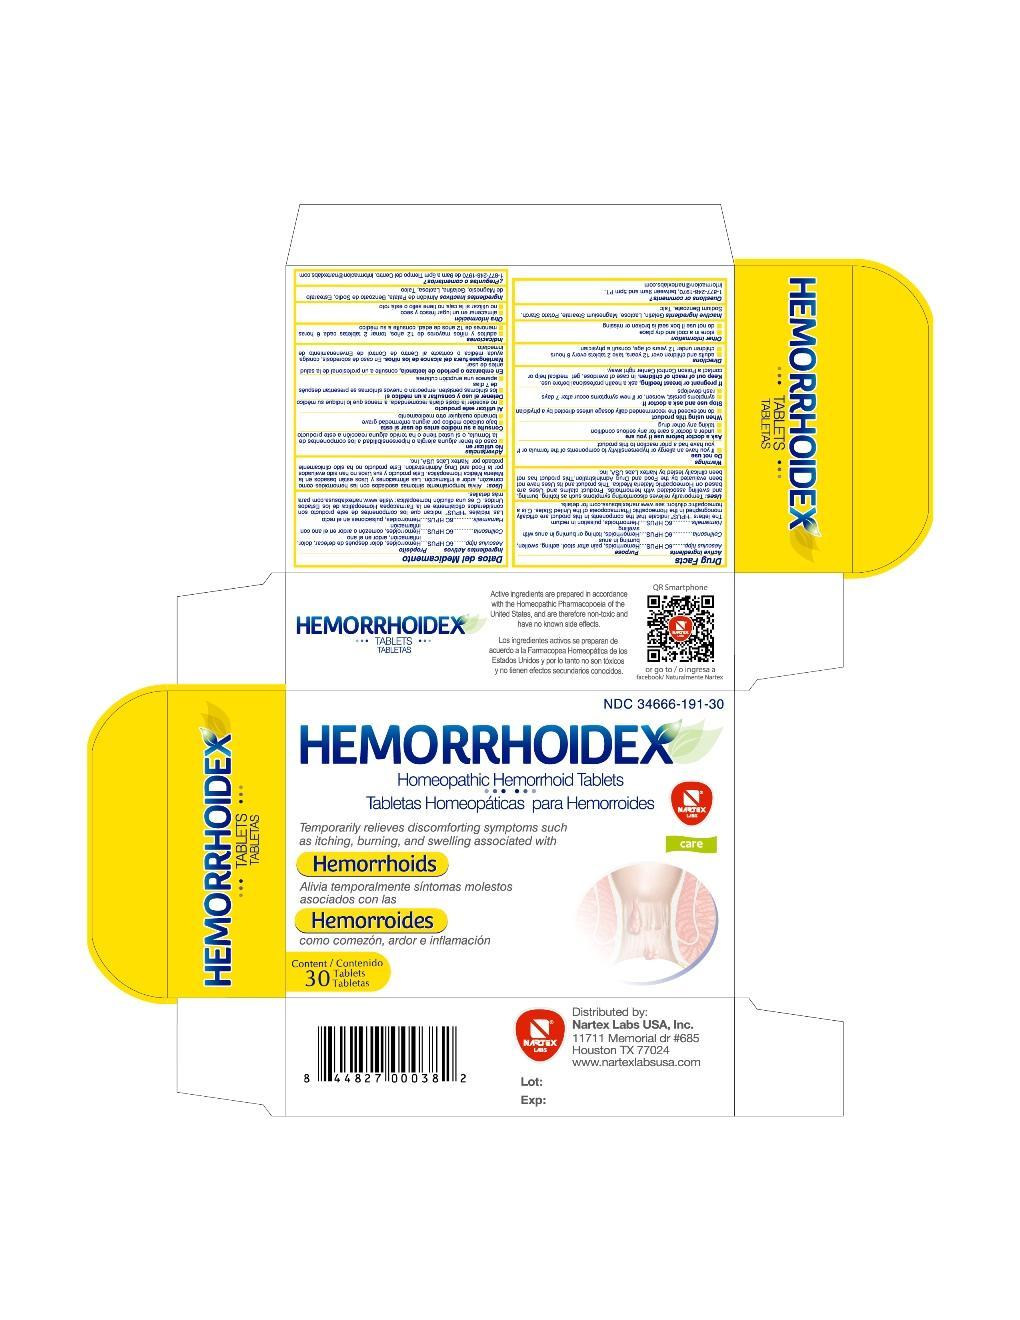 Hemorrhoidex Label